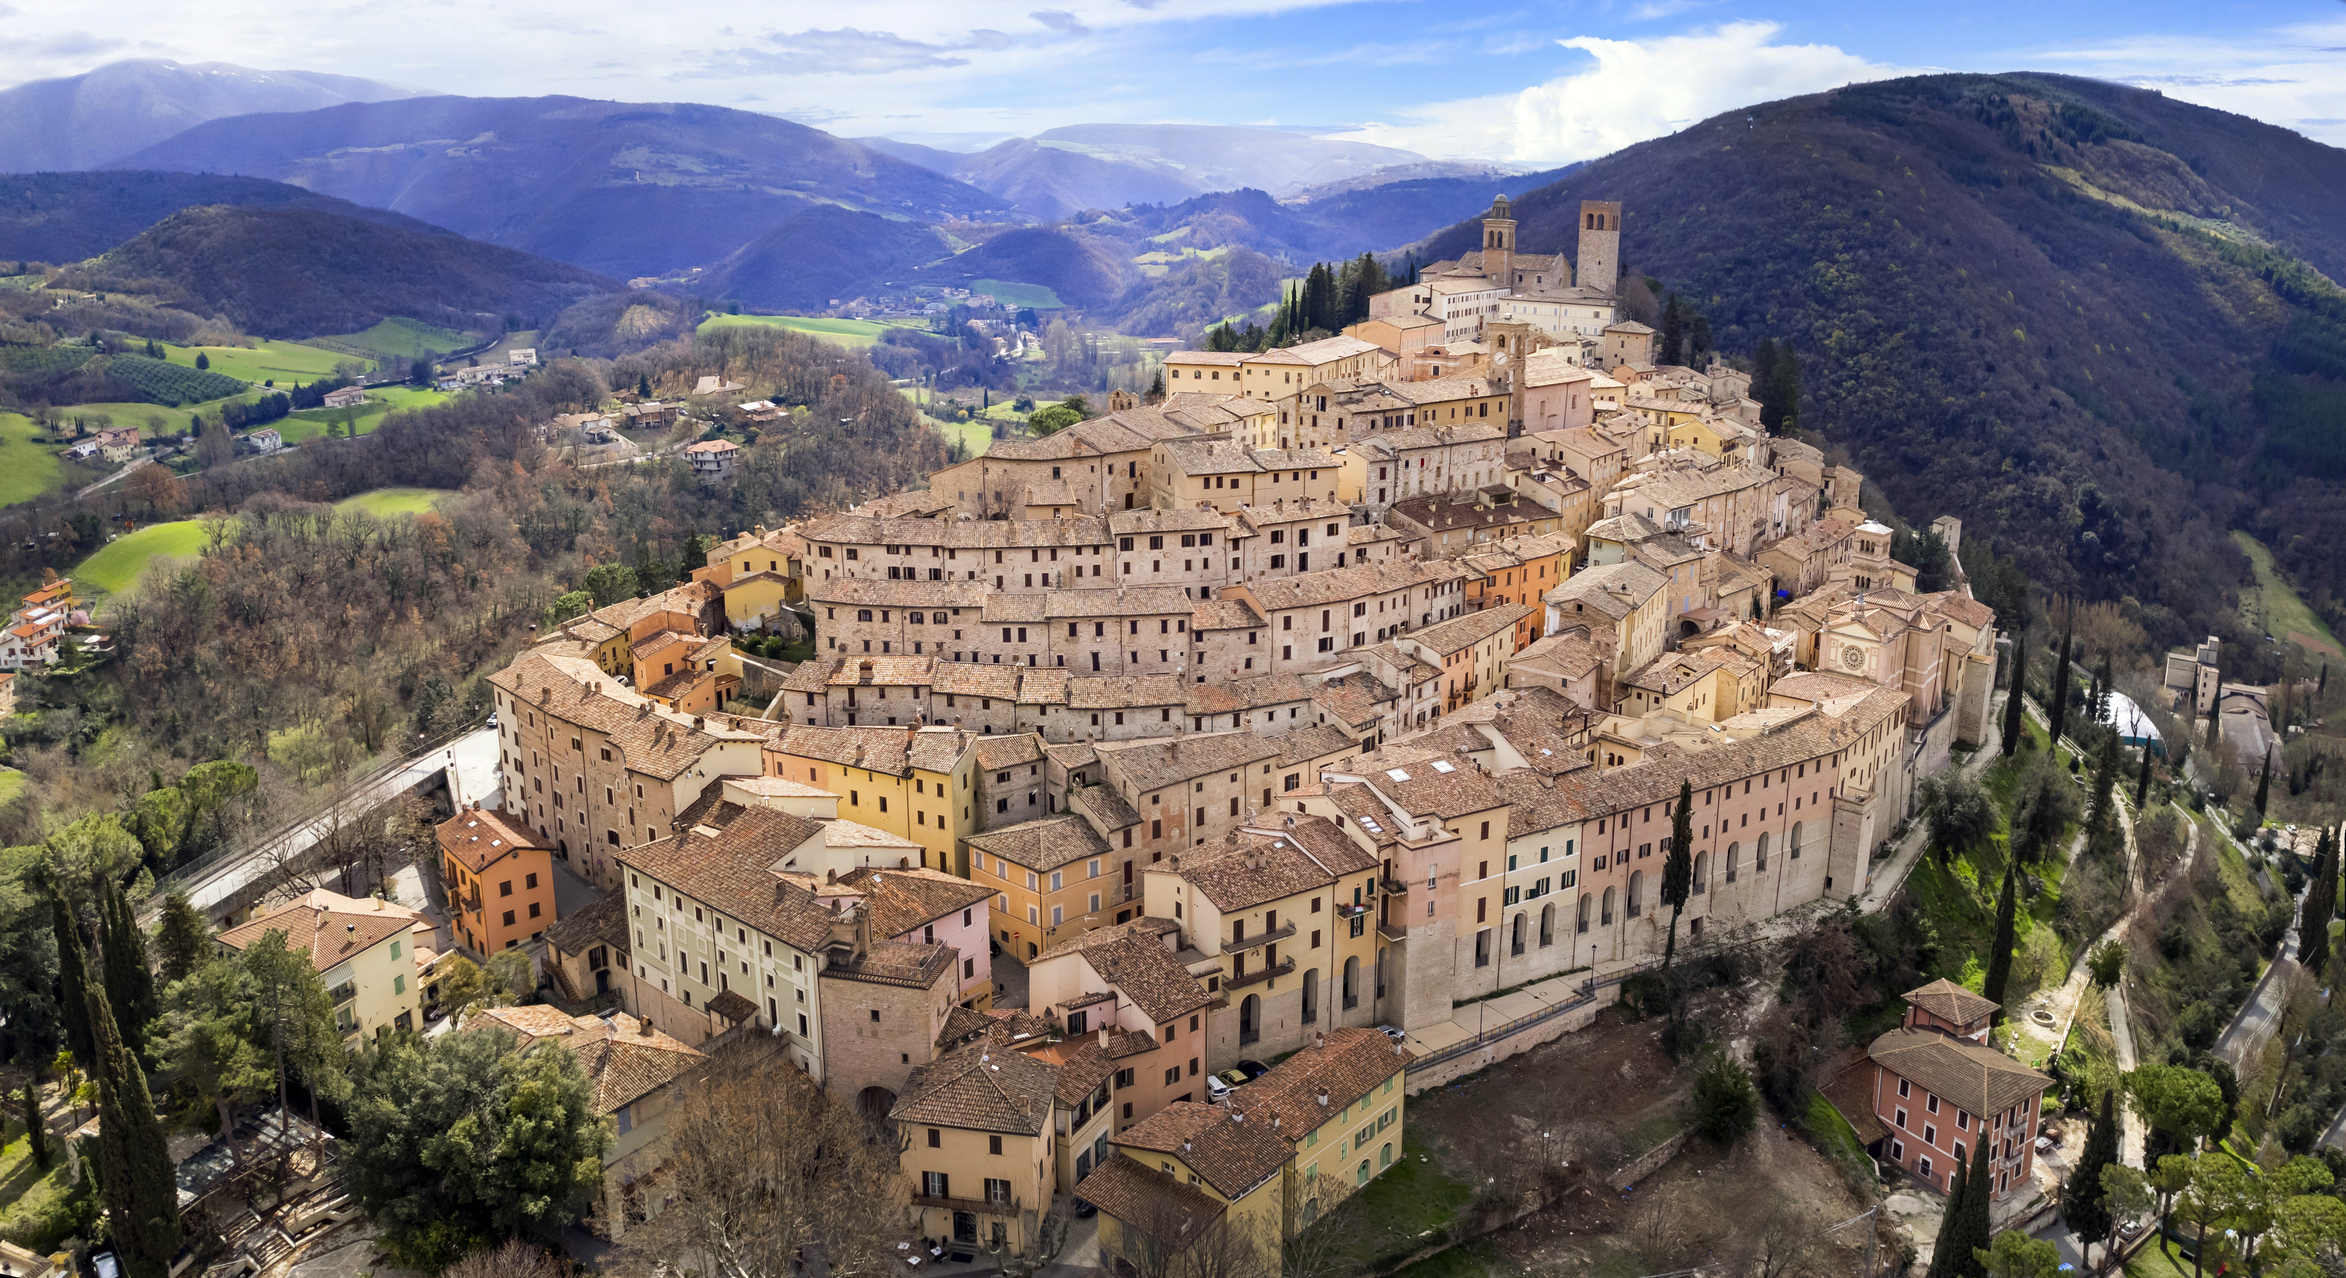 Italy, Umbria region most scenic places. beautifull Medieval village Nocera Umbra, Perugia region. Aerial drone panoramic view